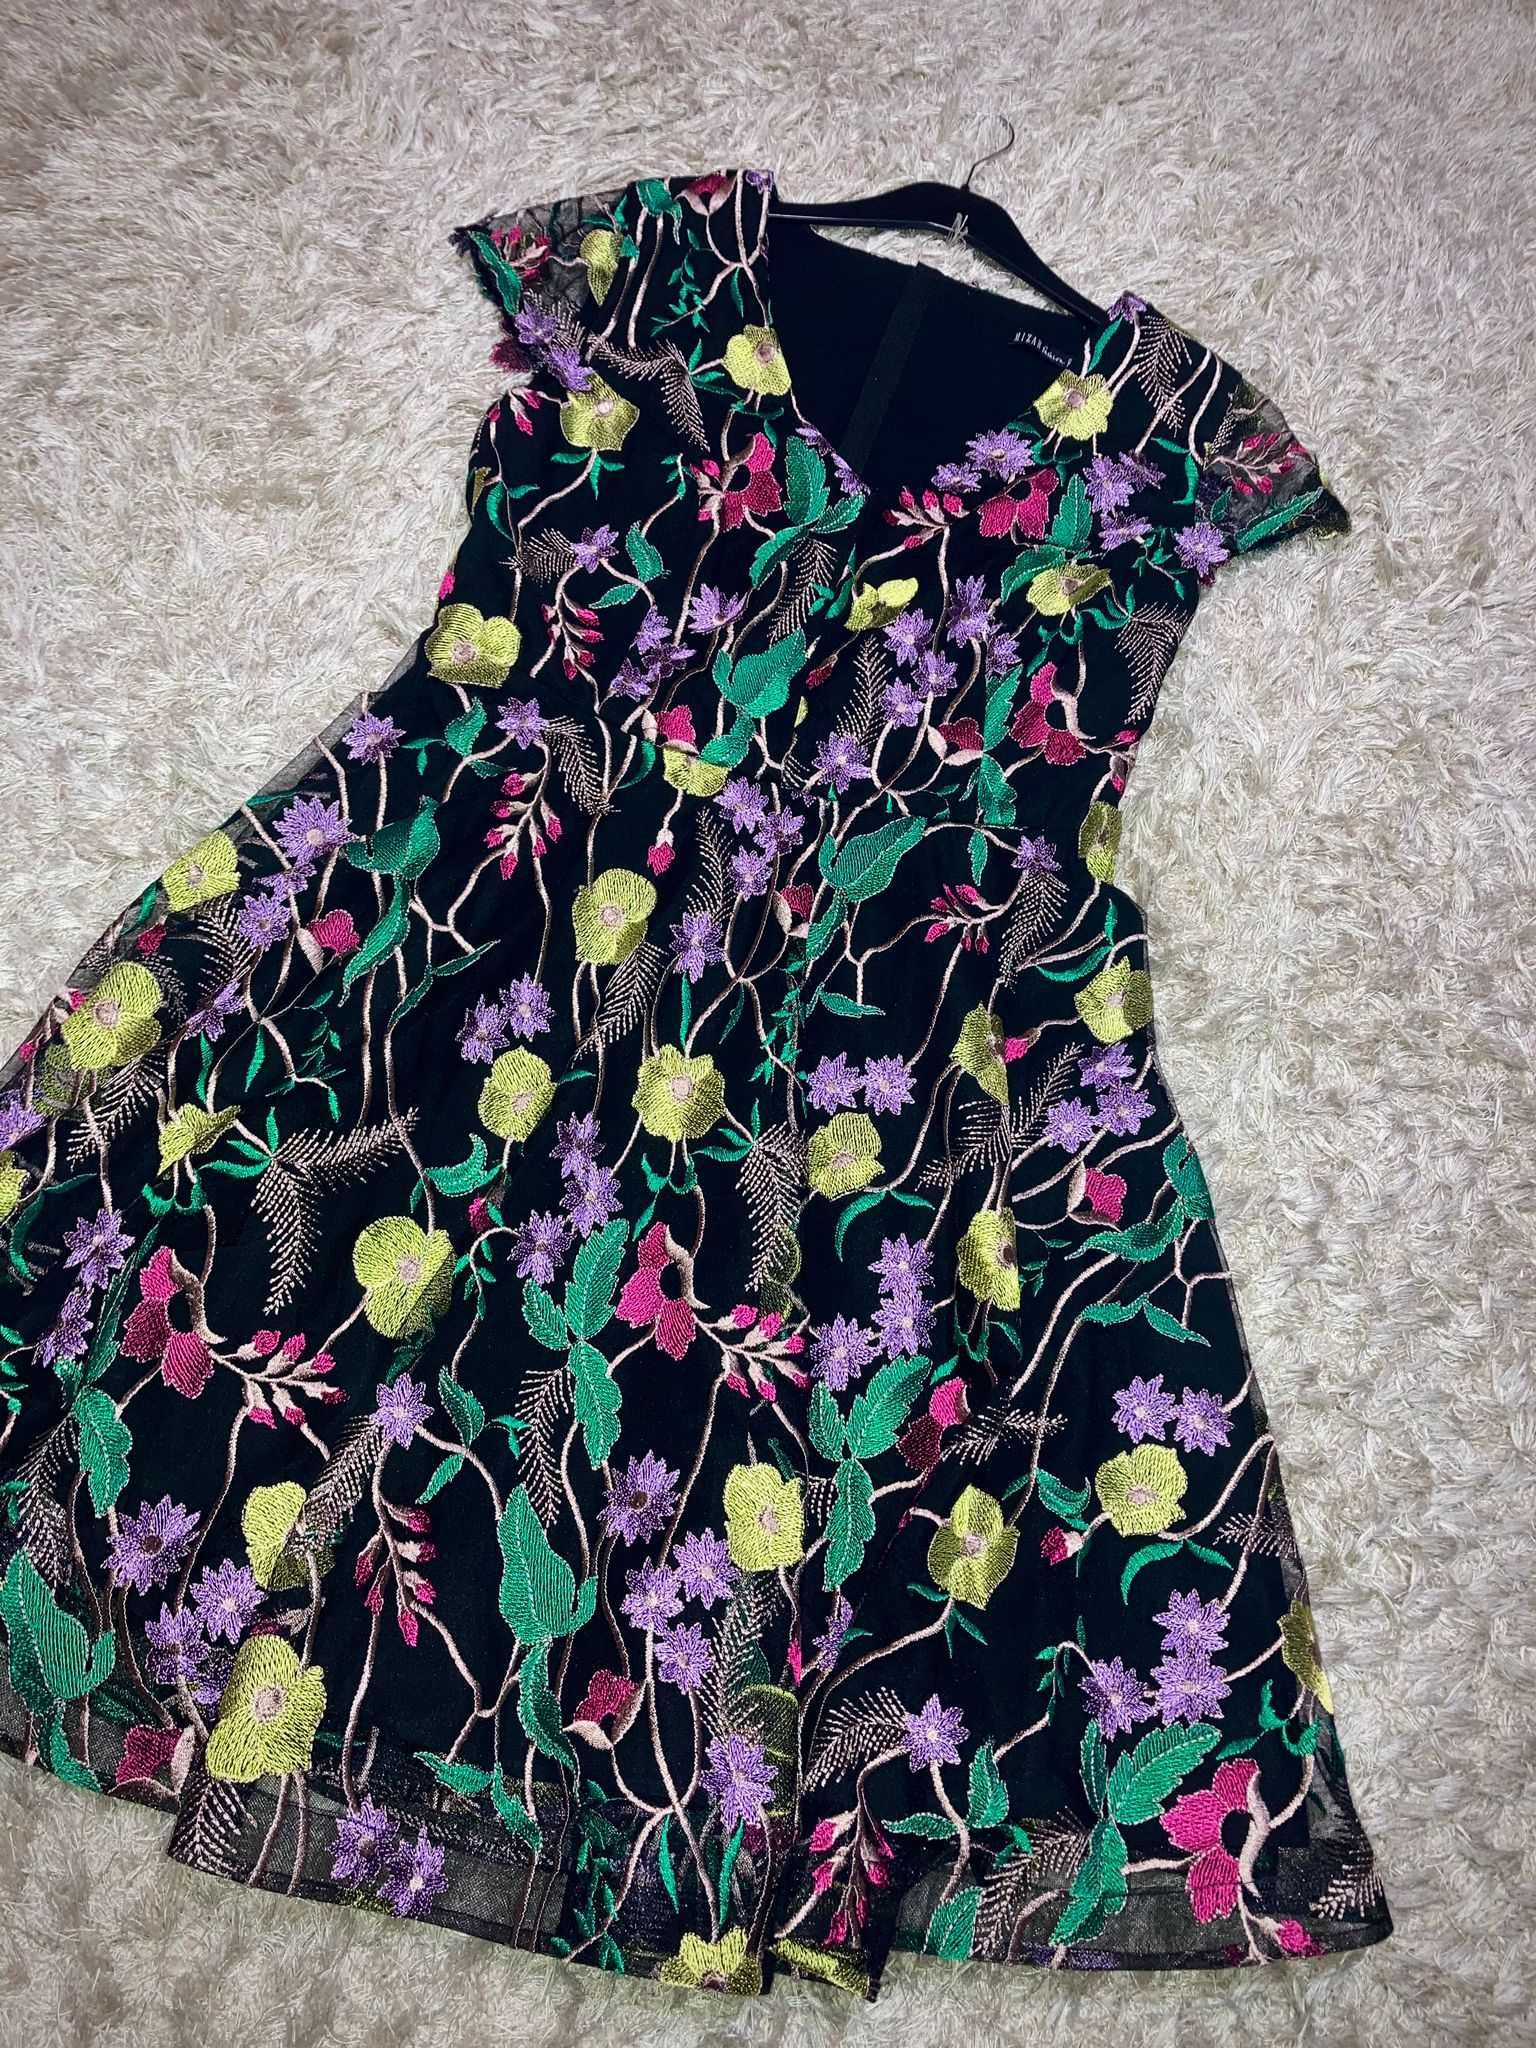 Vând rochie elegantă cu floricele colorate